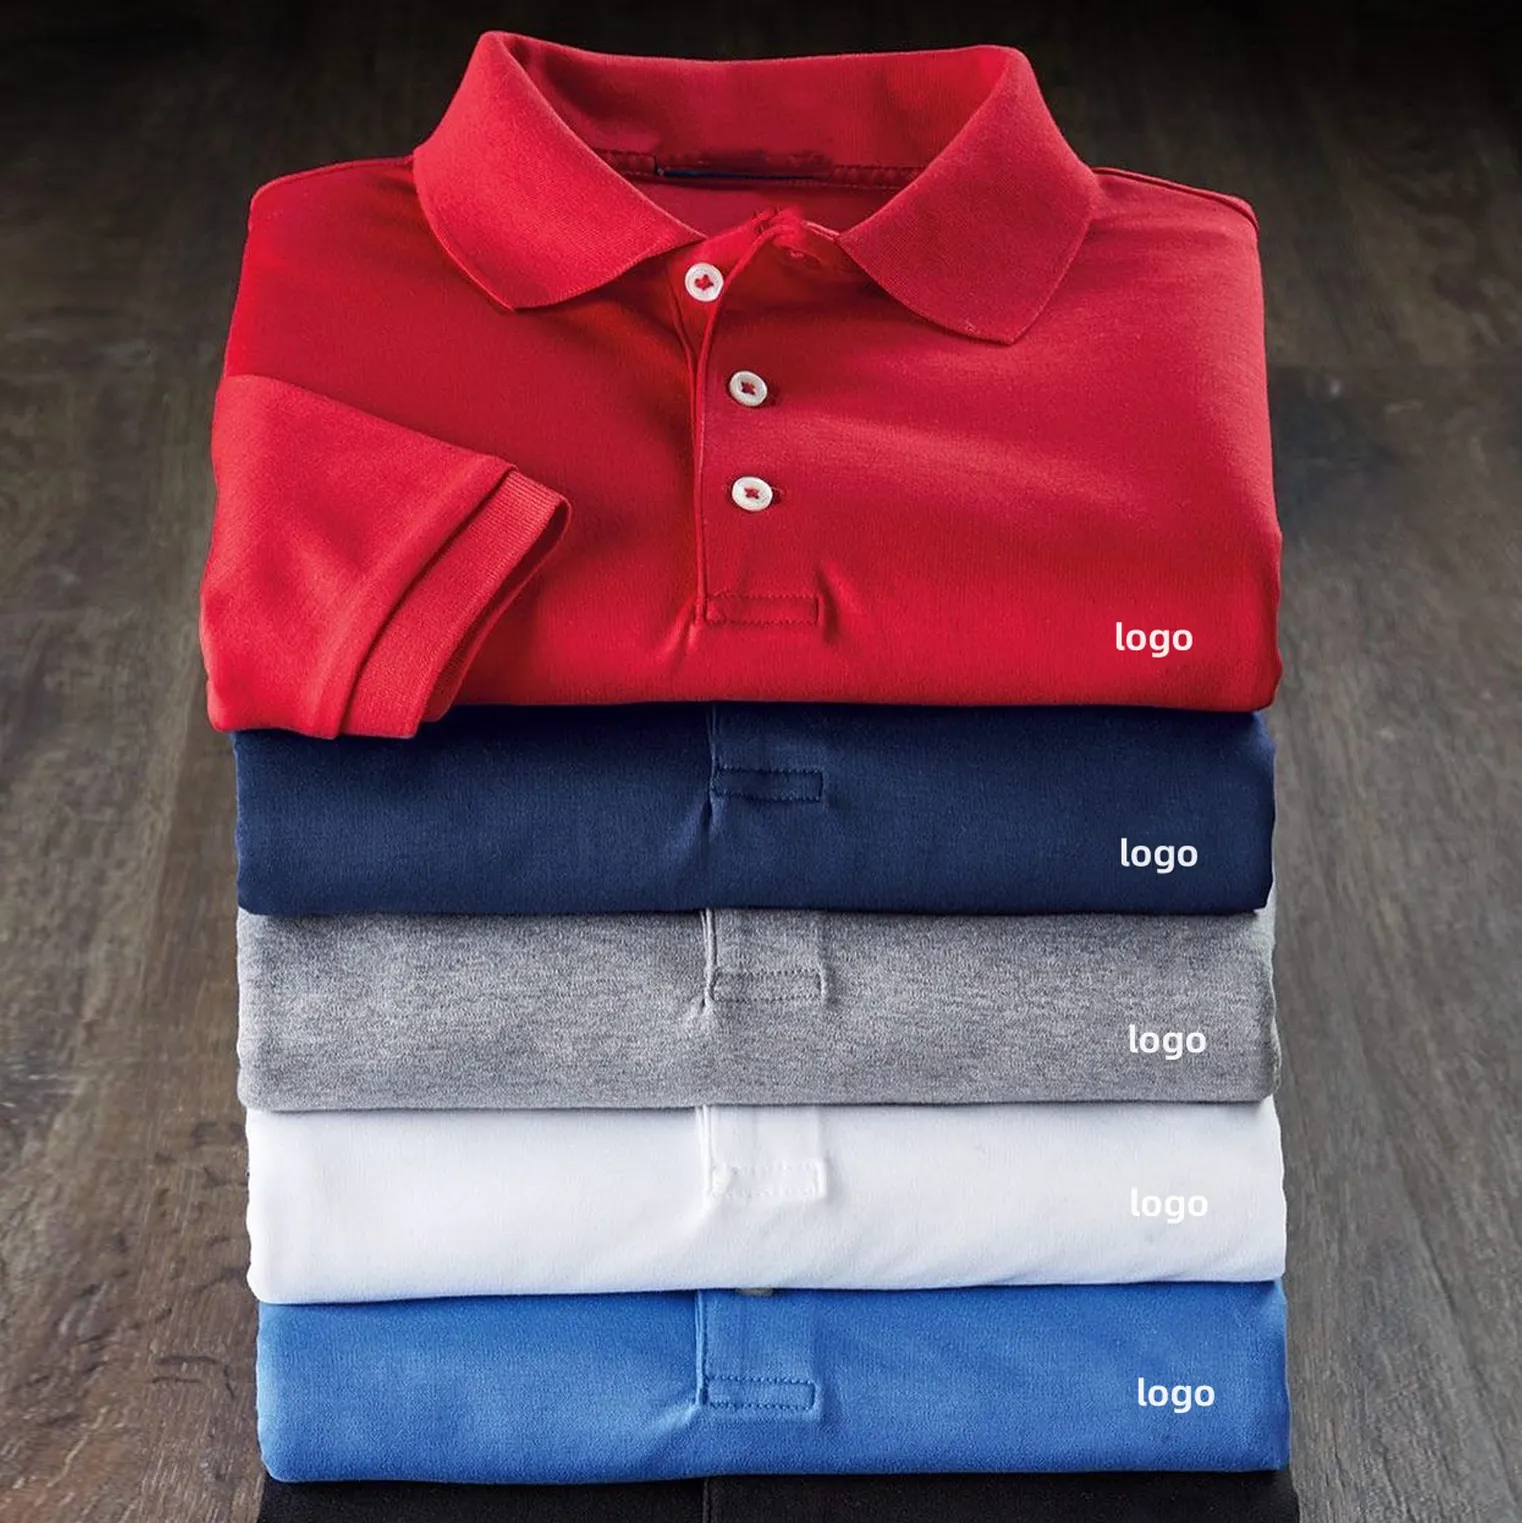 Oem de secado rápido Golf desgaste de punto en blanco Golf Polo sublime hombres Polo Camiseta para los hombres de algodón de alta calidad polos logotipo personalizado